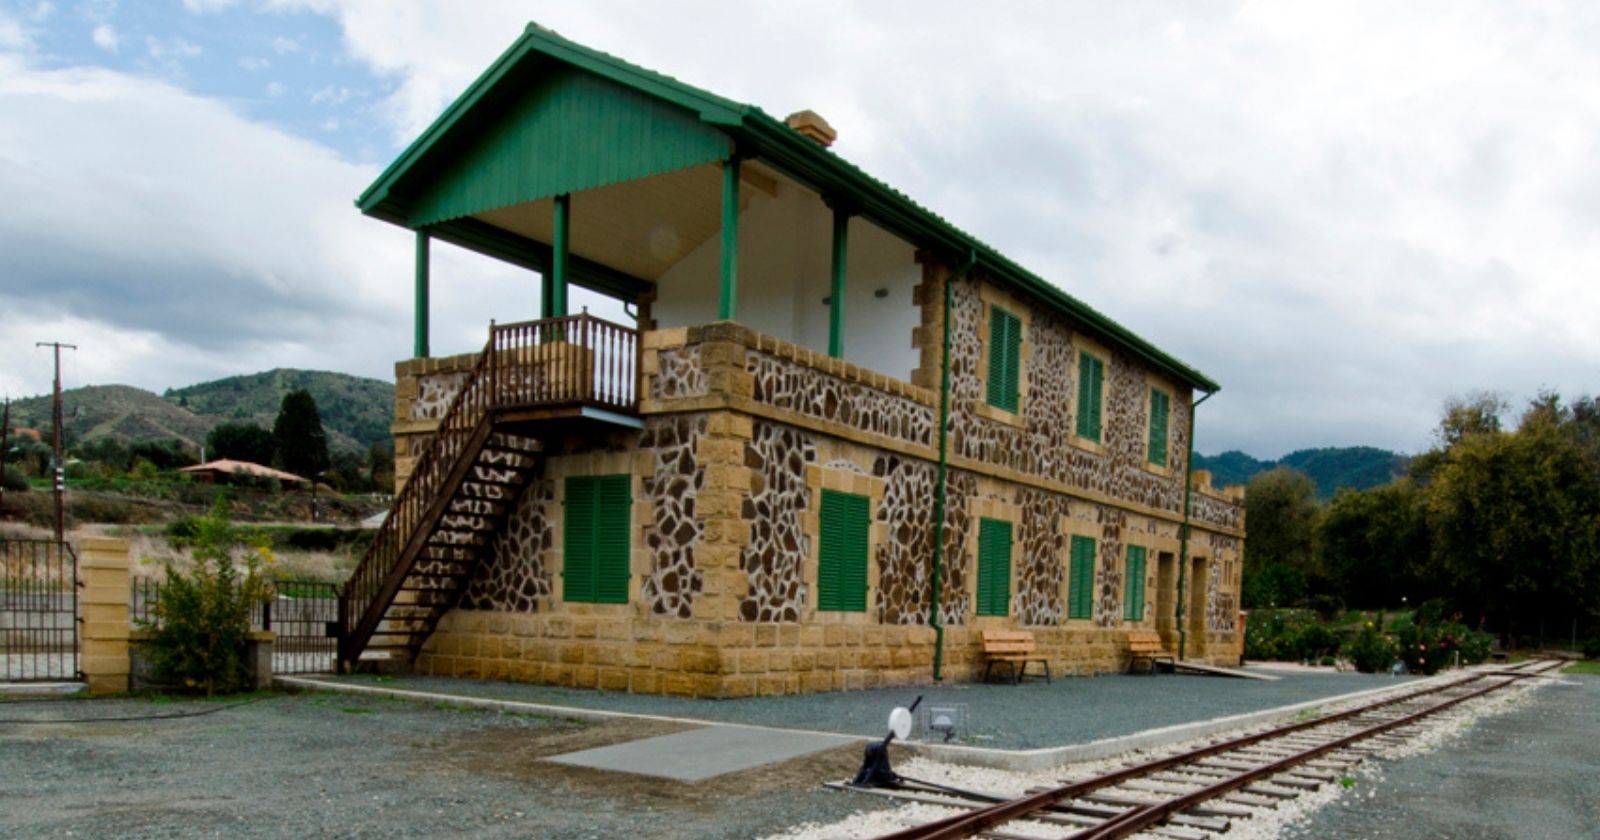 Cyprus Railways Museum in Cyprus